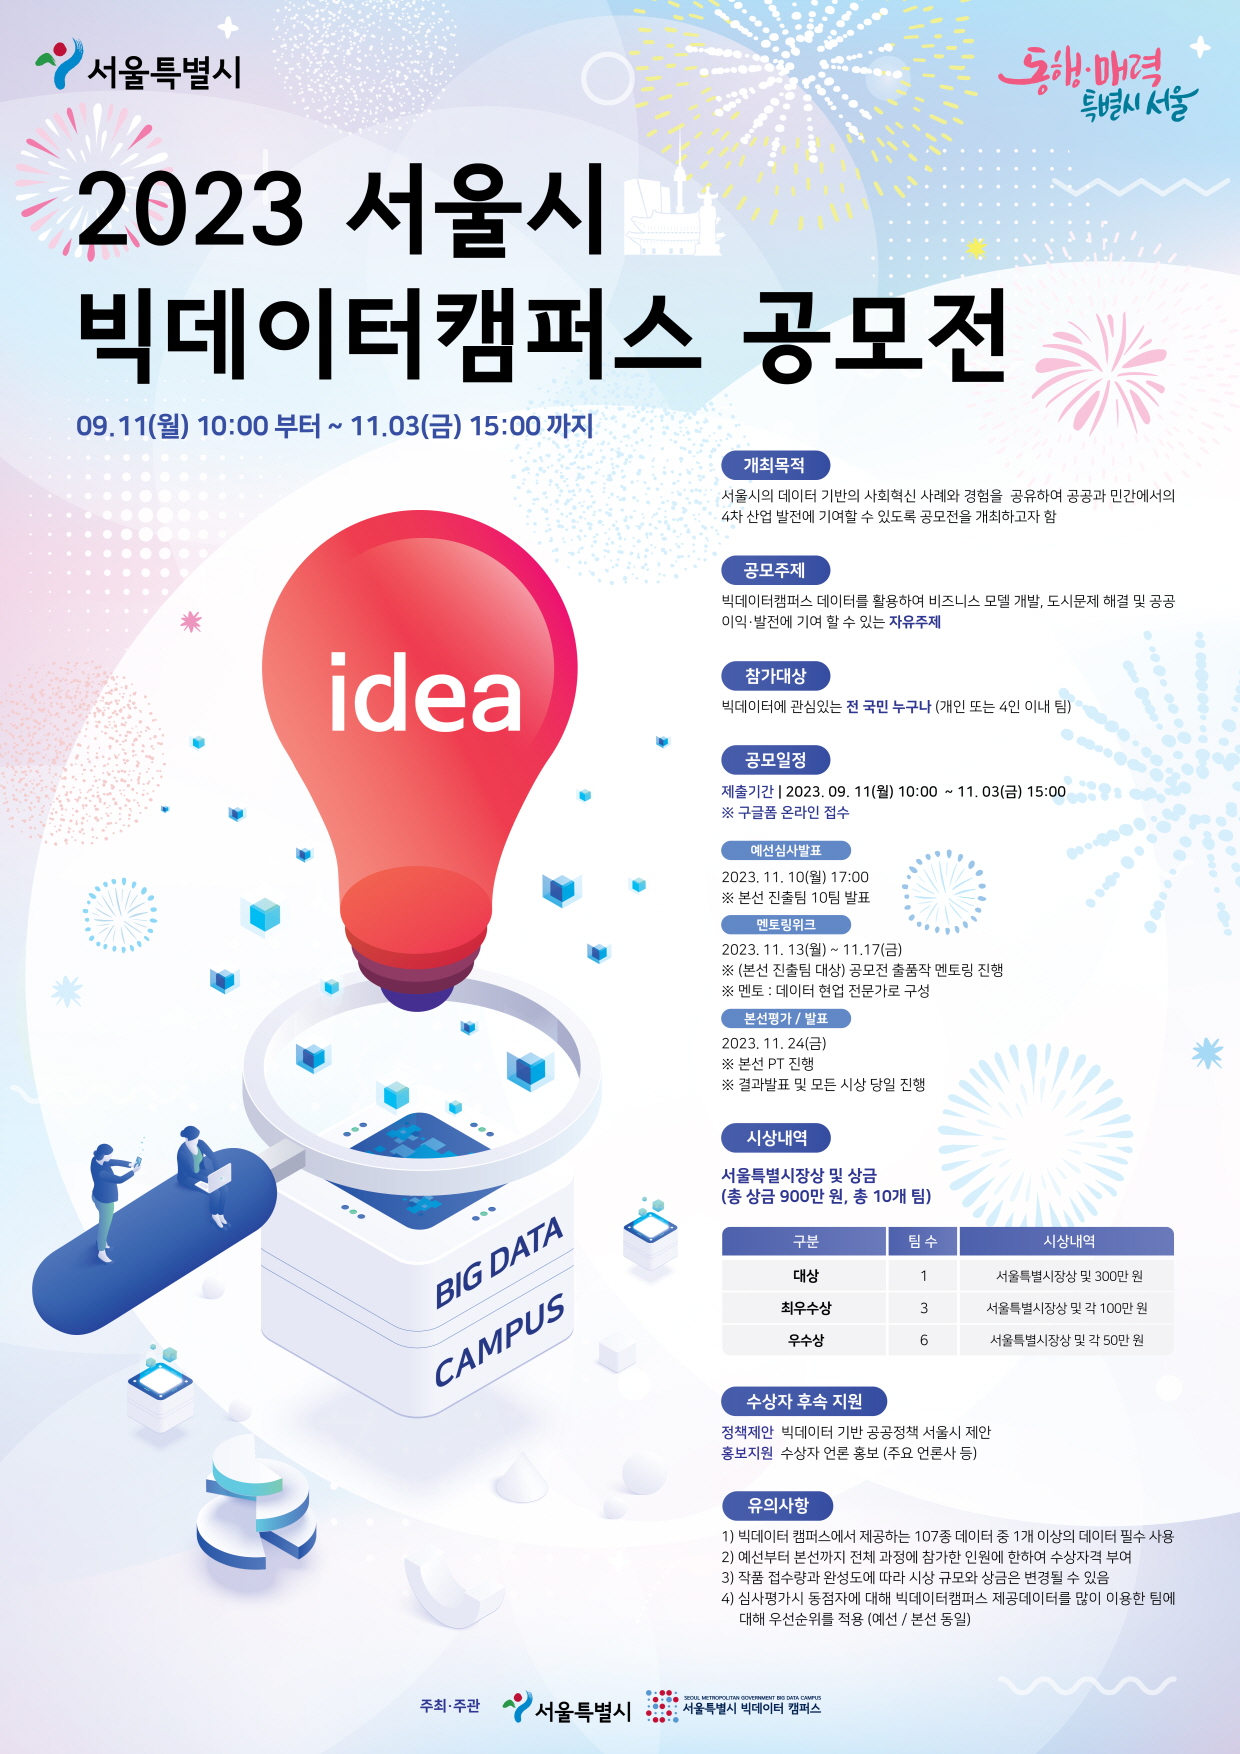 2023 서울시 빅데이터캠퍼스 공모전 개최 이미지 1 - 본문에 자세한설명을 제공합니다.